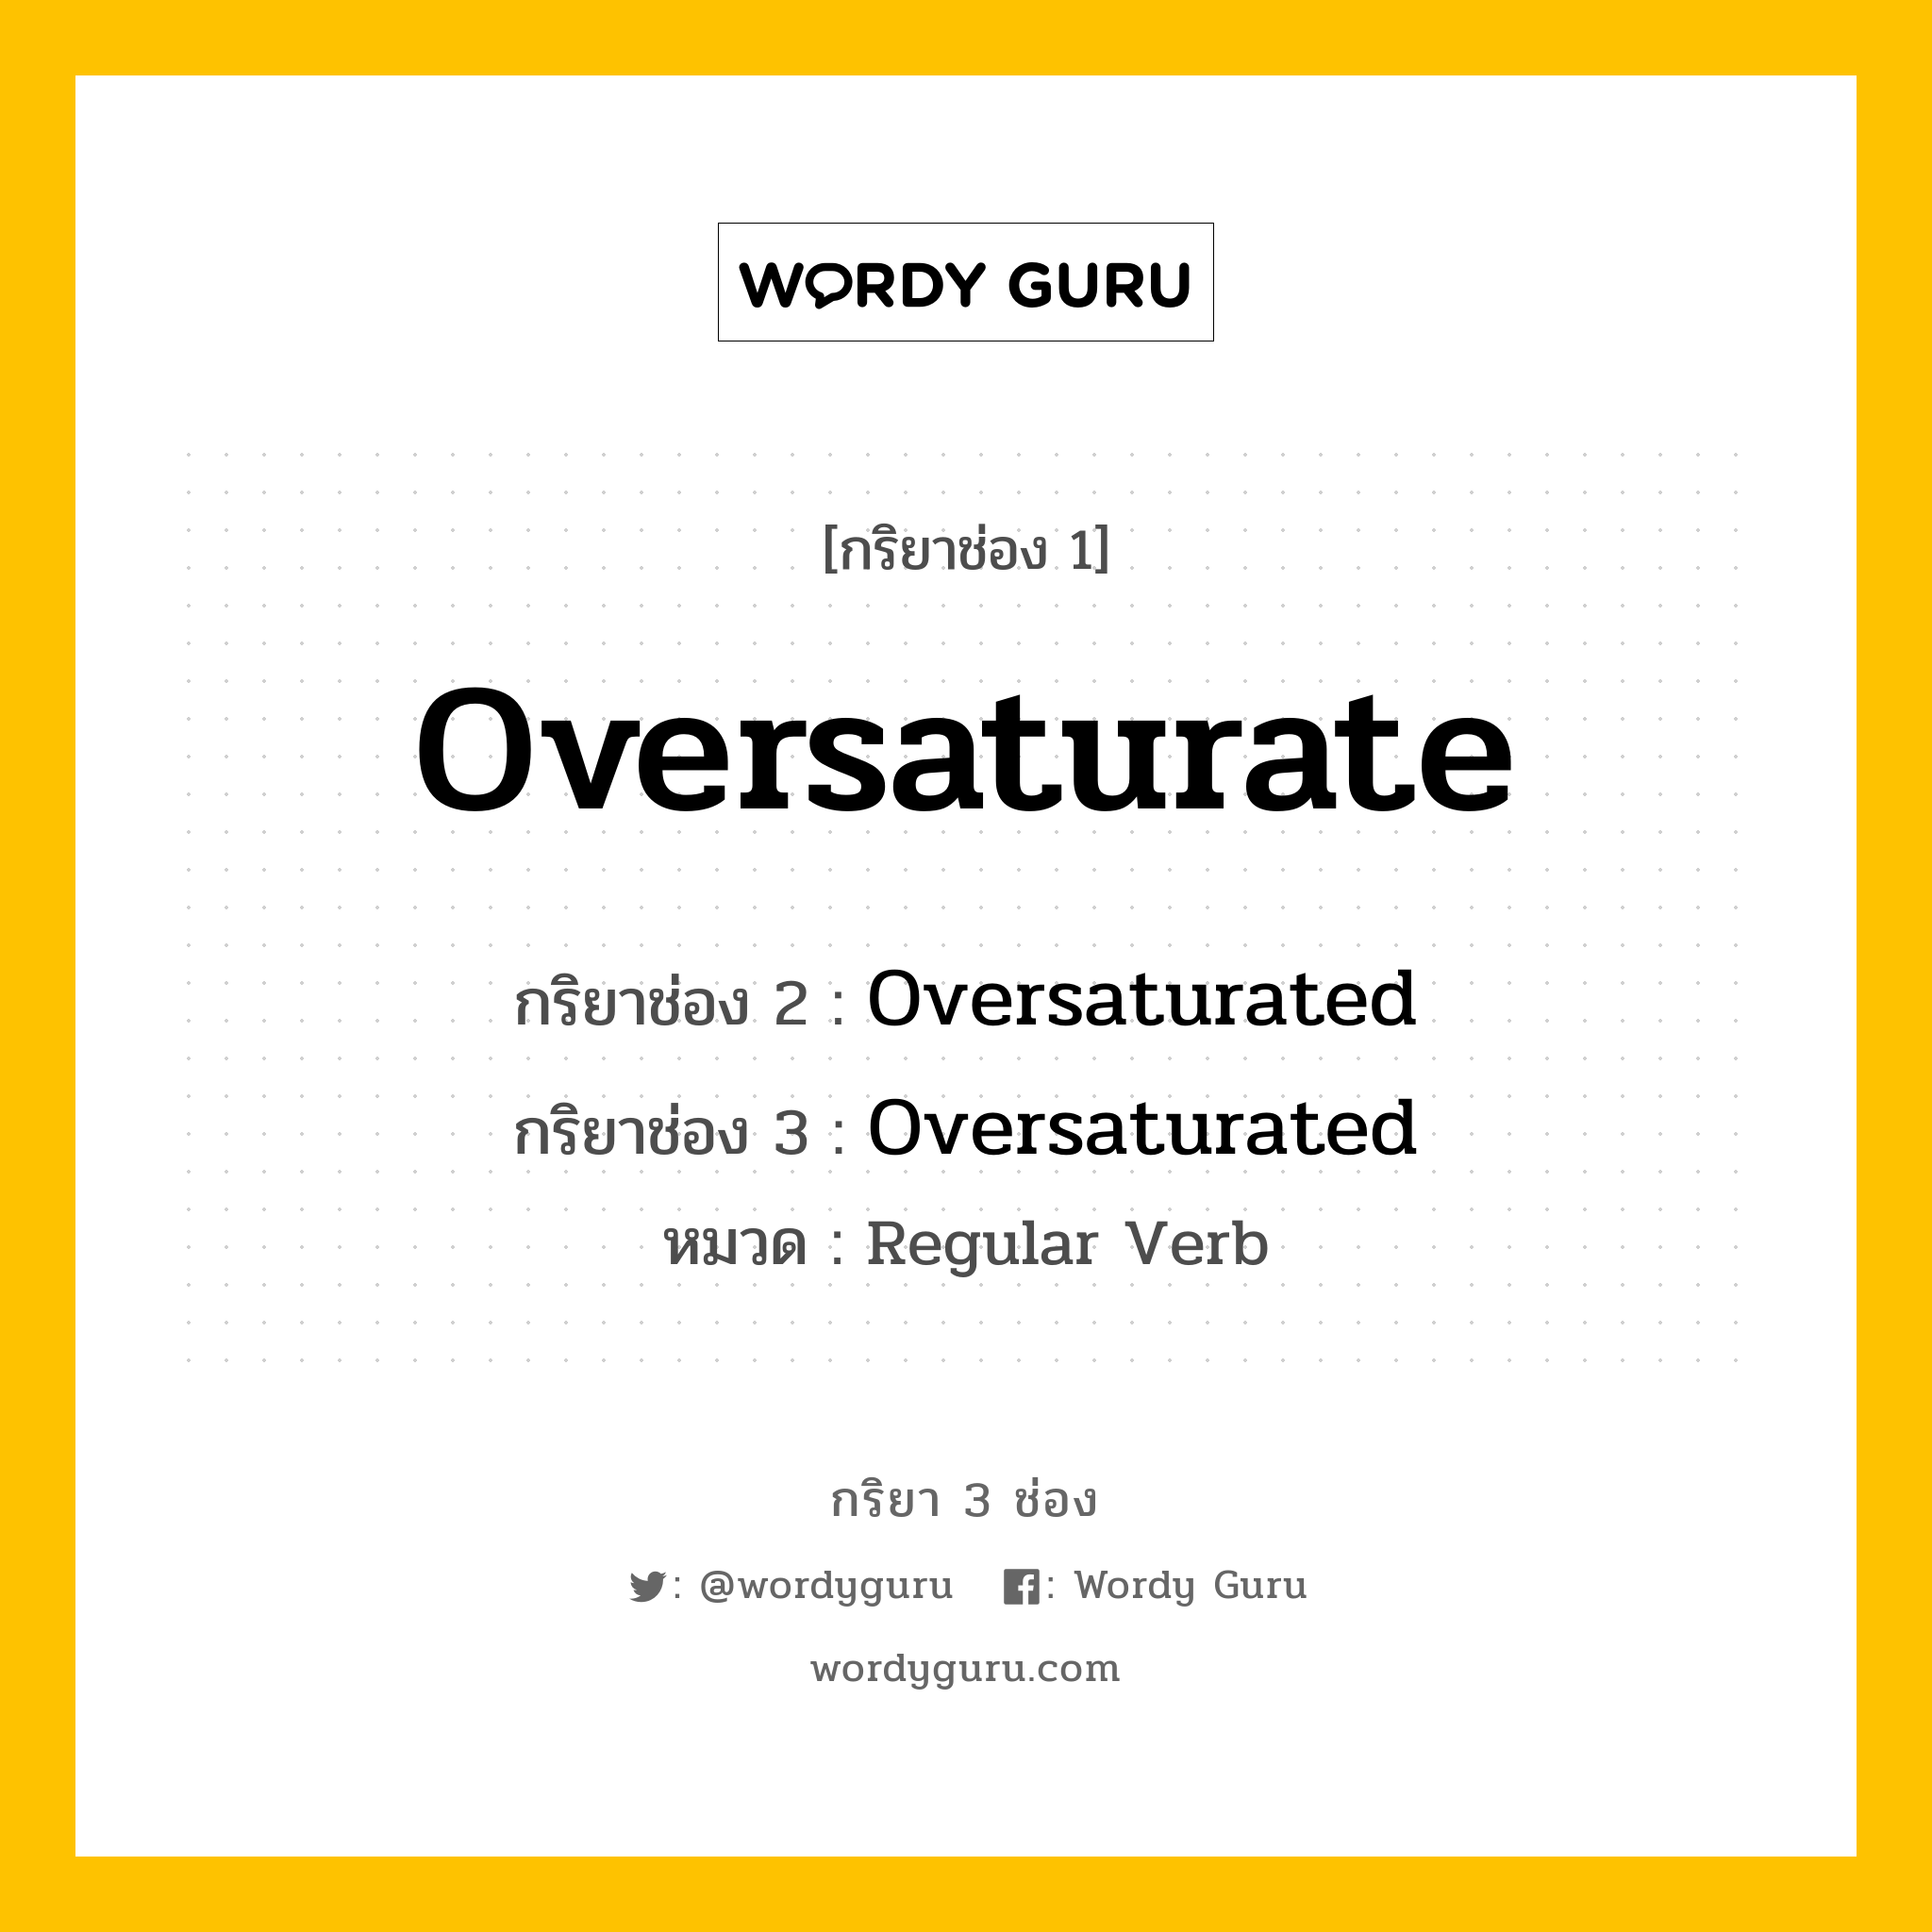 กริยา 3 ช่อง: Oversaturate ช่อง 2 Oversaturate ช่อง 3 คืออะไร, กริยาช่อง 1 Oversaturate กริยาช่อง 2 Oversaturated กริยาช่อง 3 Oversaturated หมวด Regular Verb หมวด Regular Verb